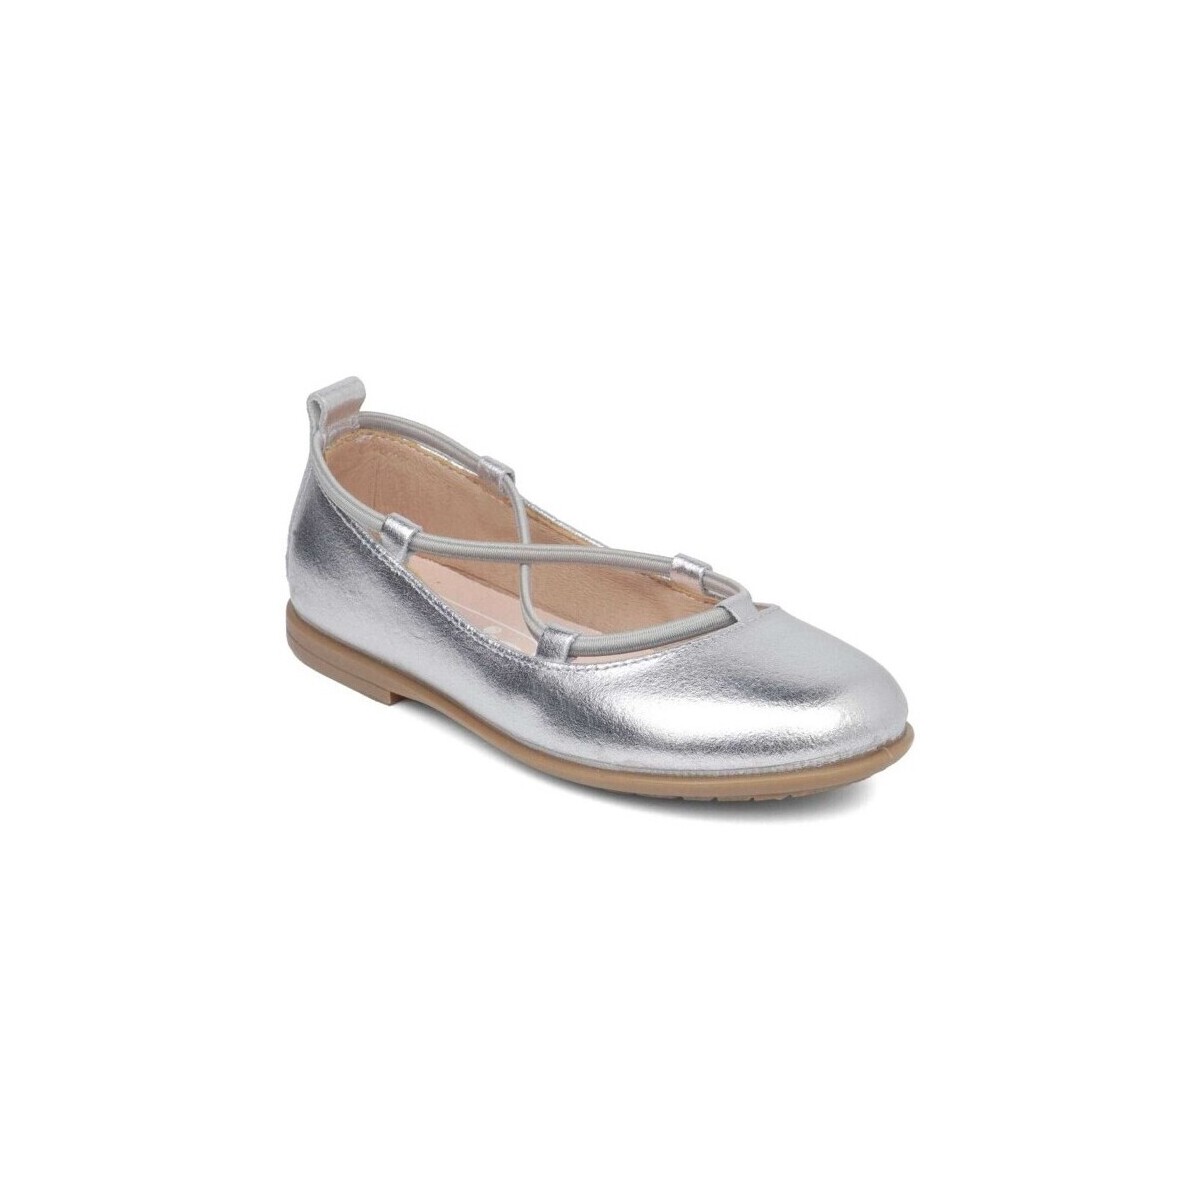 Παπούτσια Κορίτσι Μπαλαρίνες Gorila 27510-18 Silver